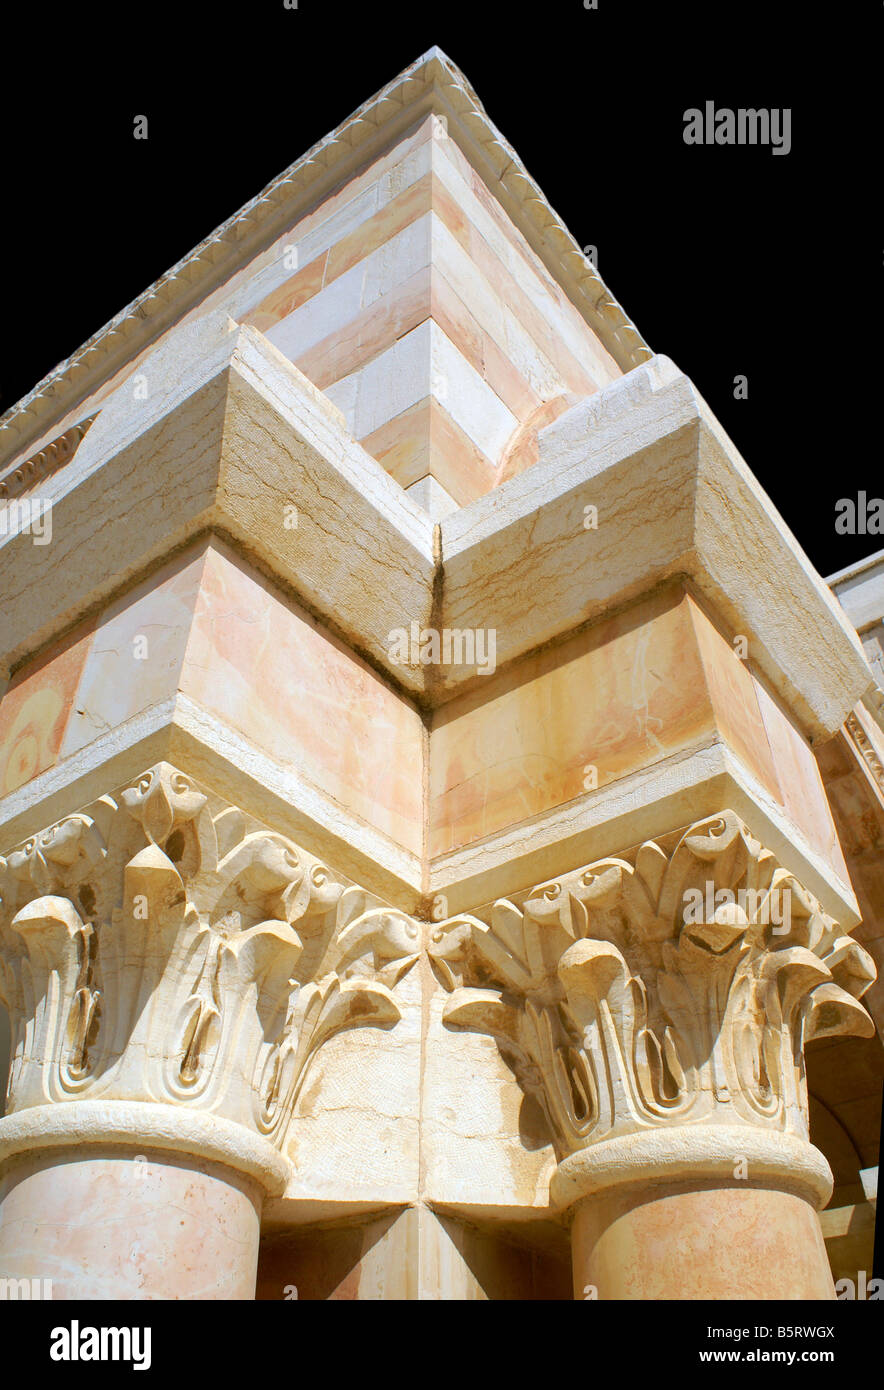 Le grec ancien temple de marbre et de kaolin sur fond noir Banque D'Images